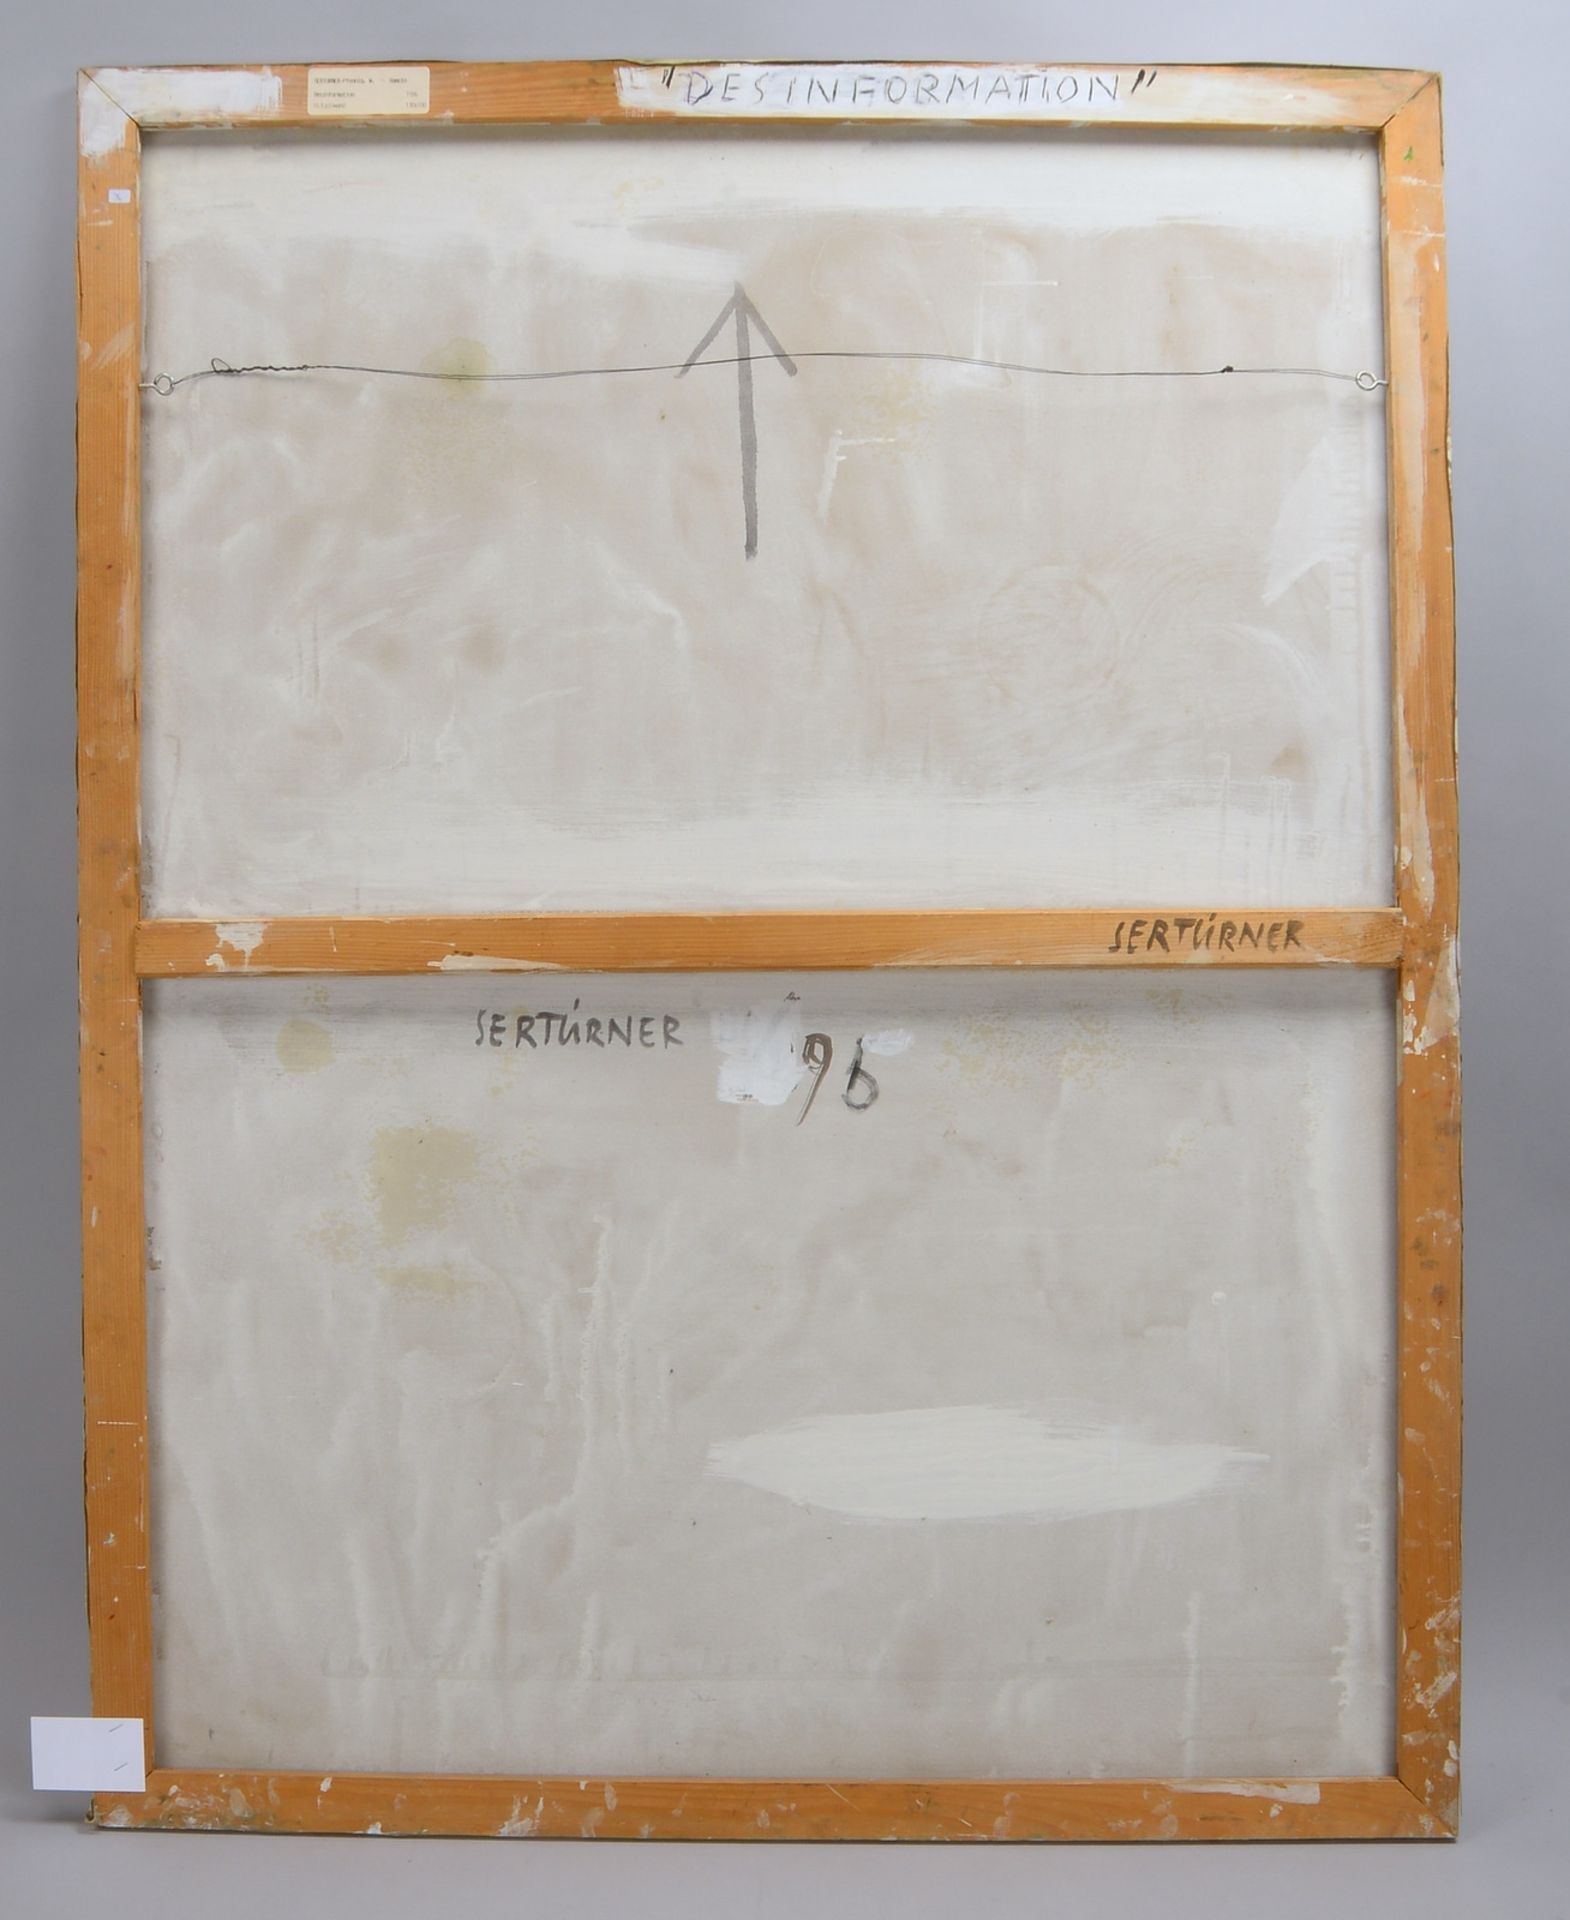 Sertürner, Wernhera, 'Desinformation' - OT, Öl/Lw, sign., unger.; Bildmaße 130 x 100 cm - Image 3 of 3